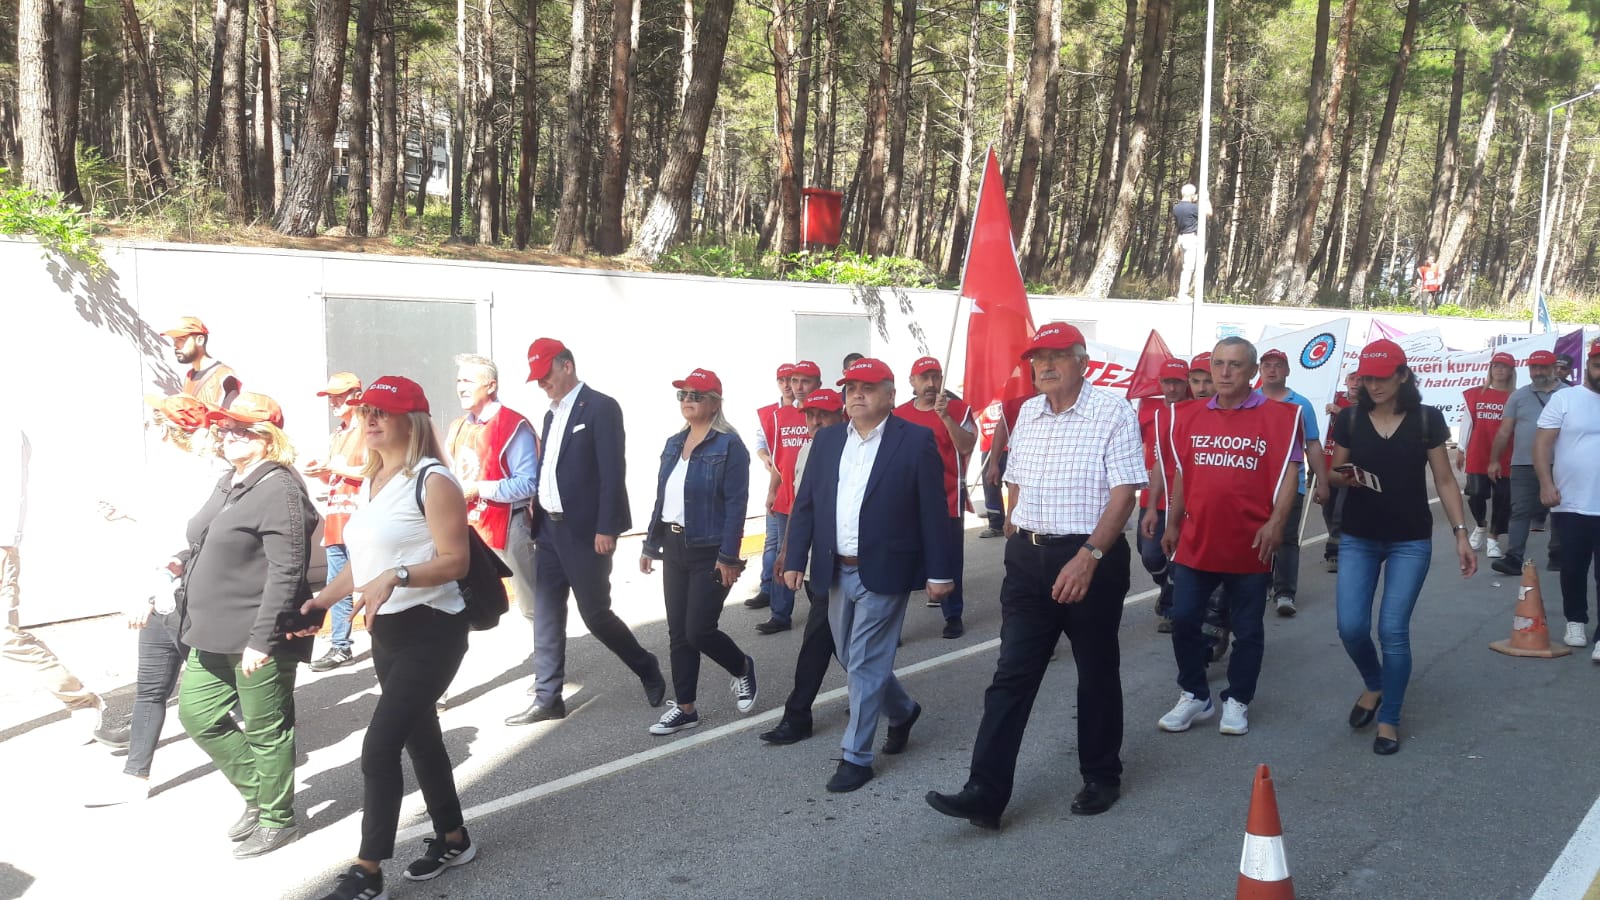 Samsun'da TEZ-KOOP işçileri, OMÜ'deki 6'ncı eylemlerini gerçekleştirirken Sendika Başkanı, "Yüzde 5 lanetinden kurtulana kadar burada olacağız" dedi